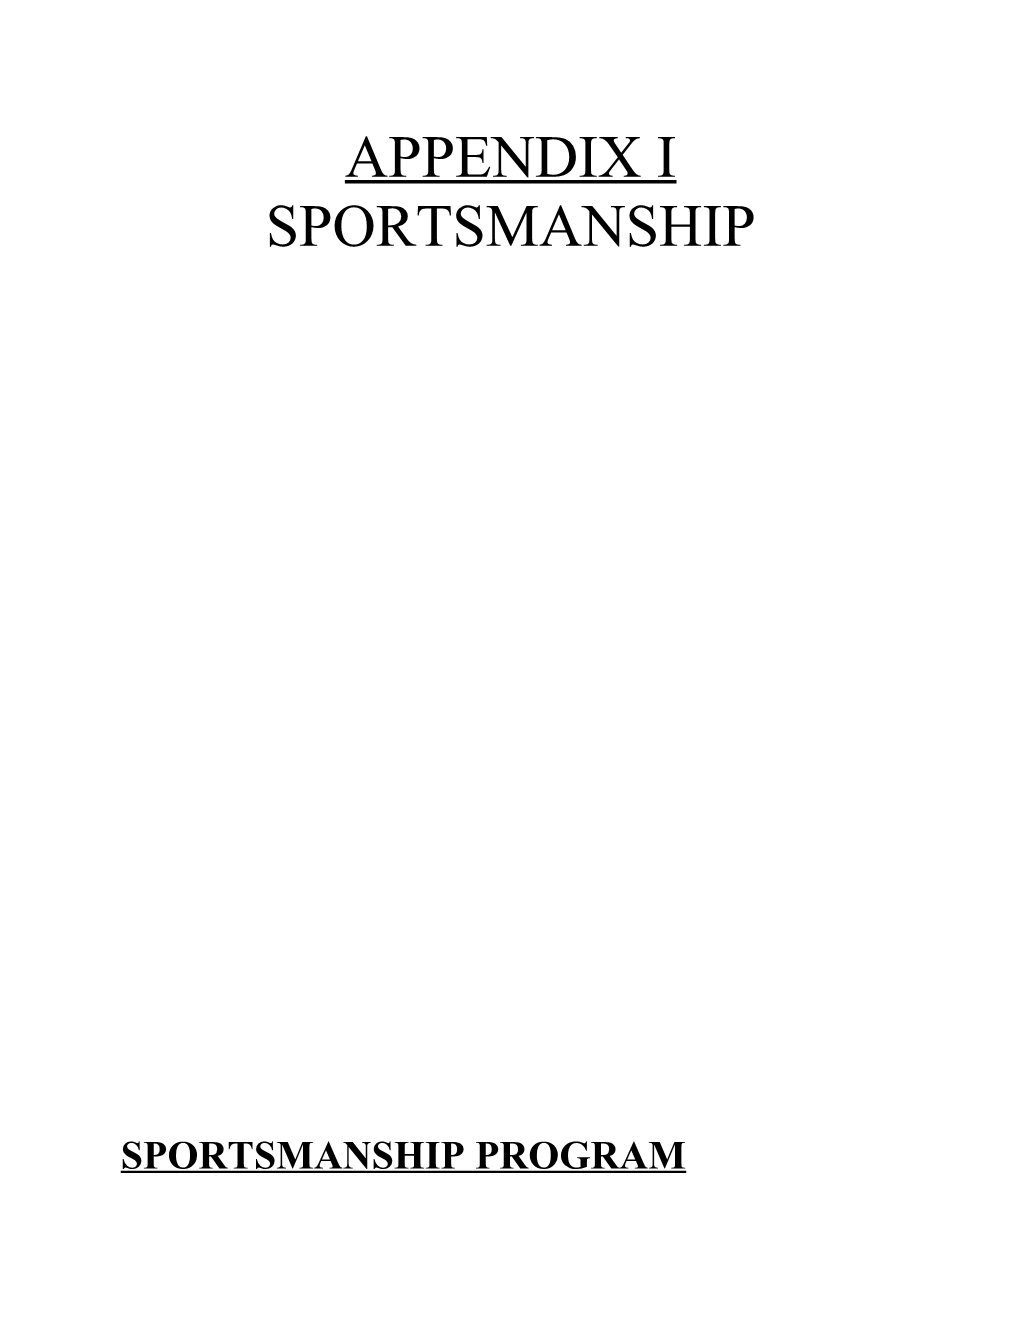 Sportsmanship Program